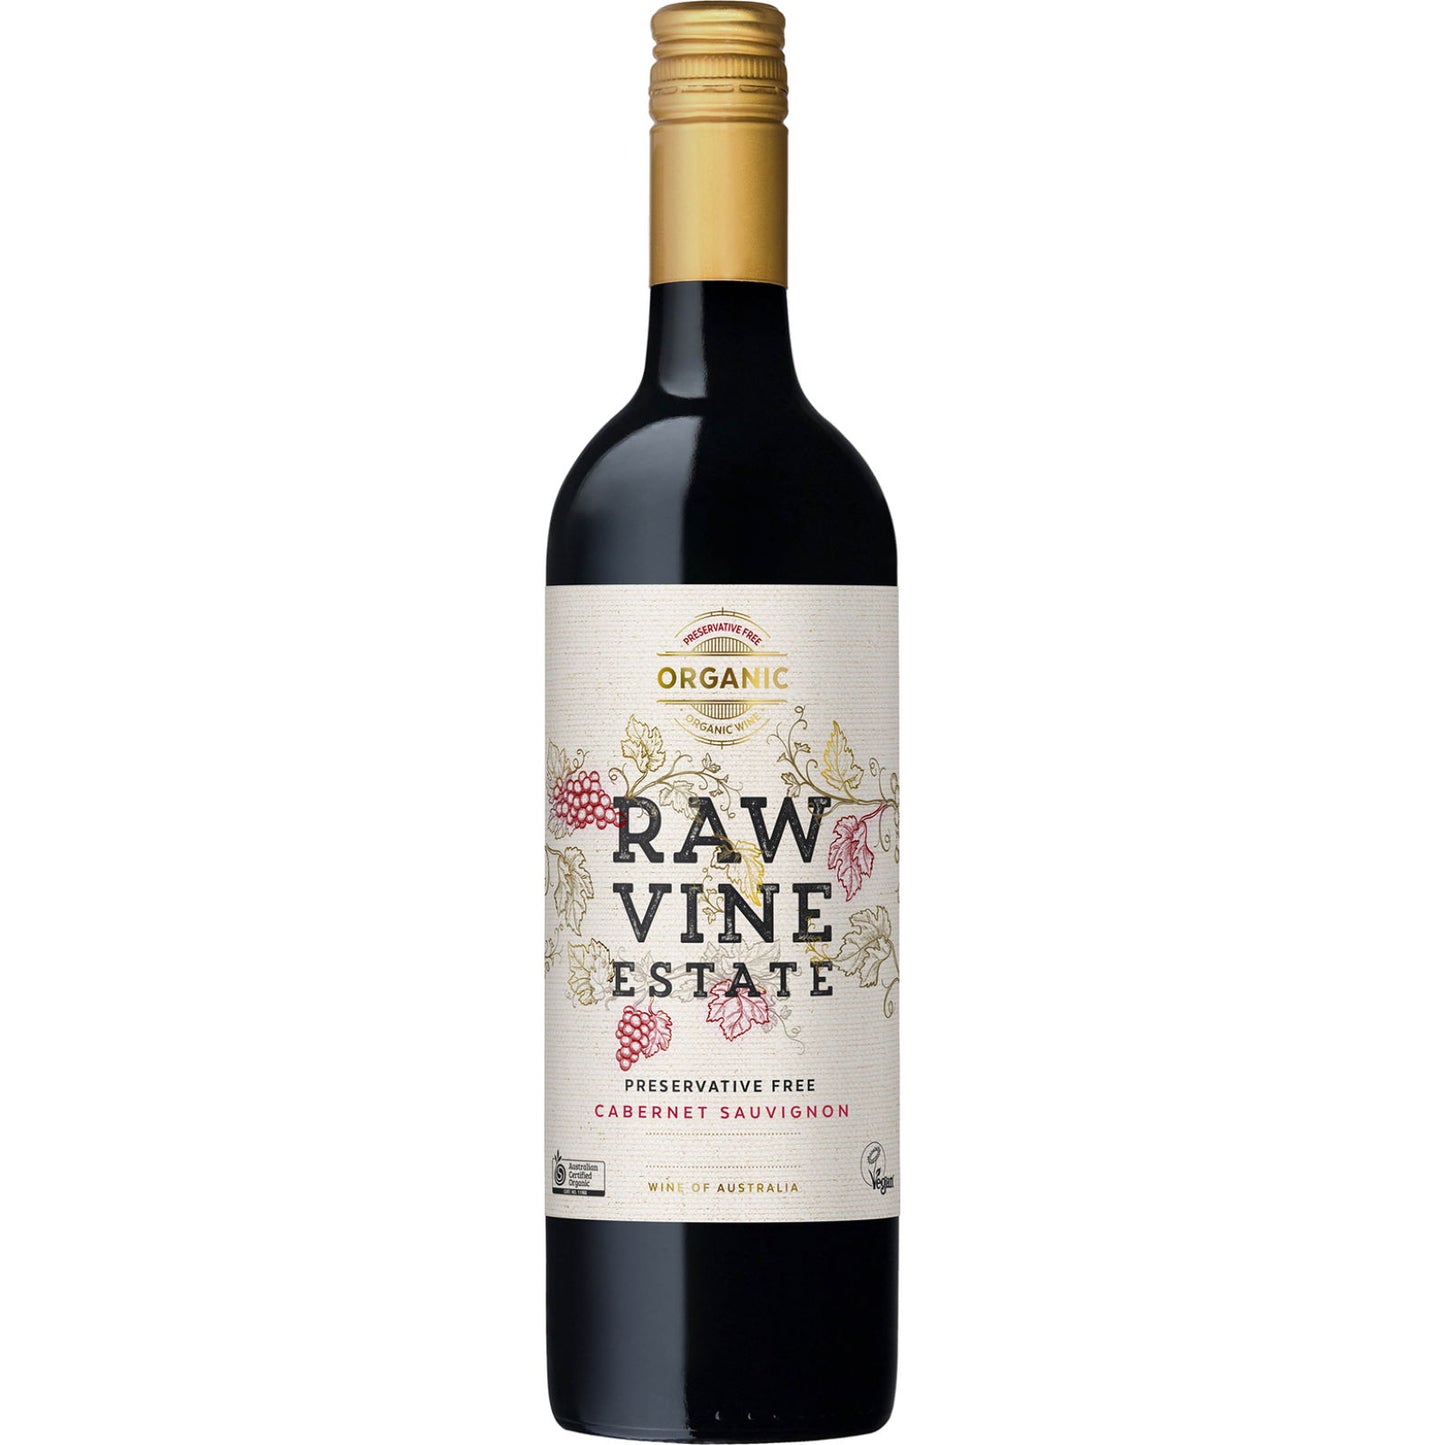 Raw Vine Estate Organic Cabernet Sauvignon